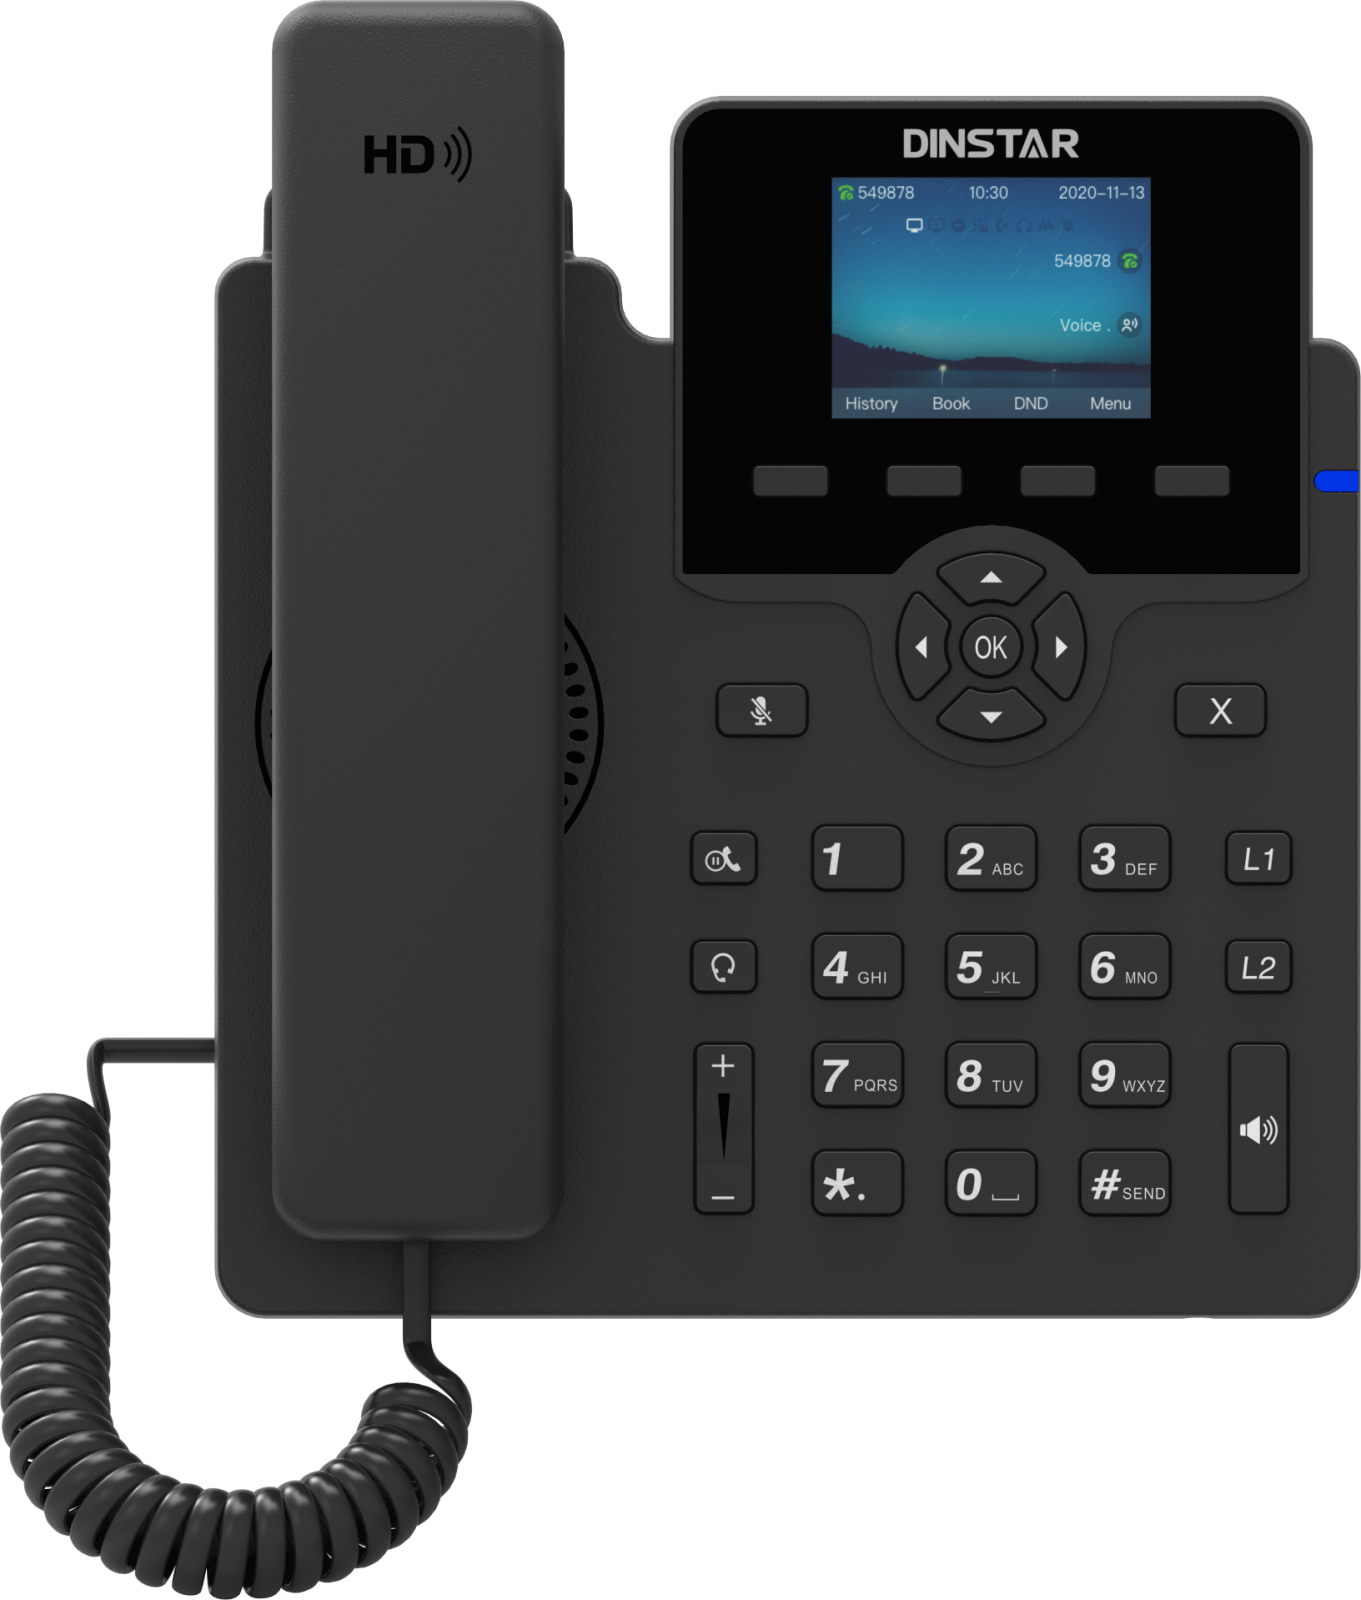 IP-телефон Dinstar C62UP 6 SIP аккаунтов цветной дисплей 24 дюйма конференция на 5 абонентов поддержка EHS и POE